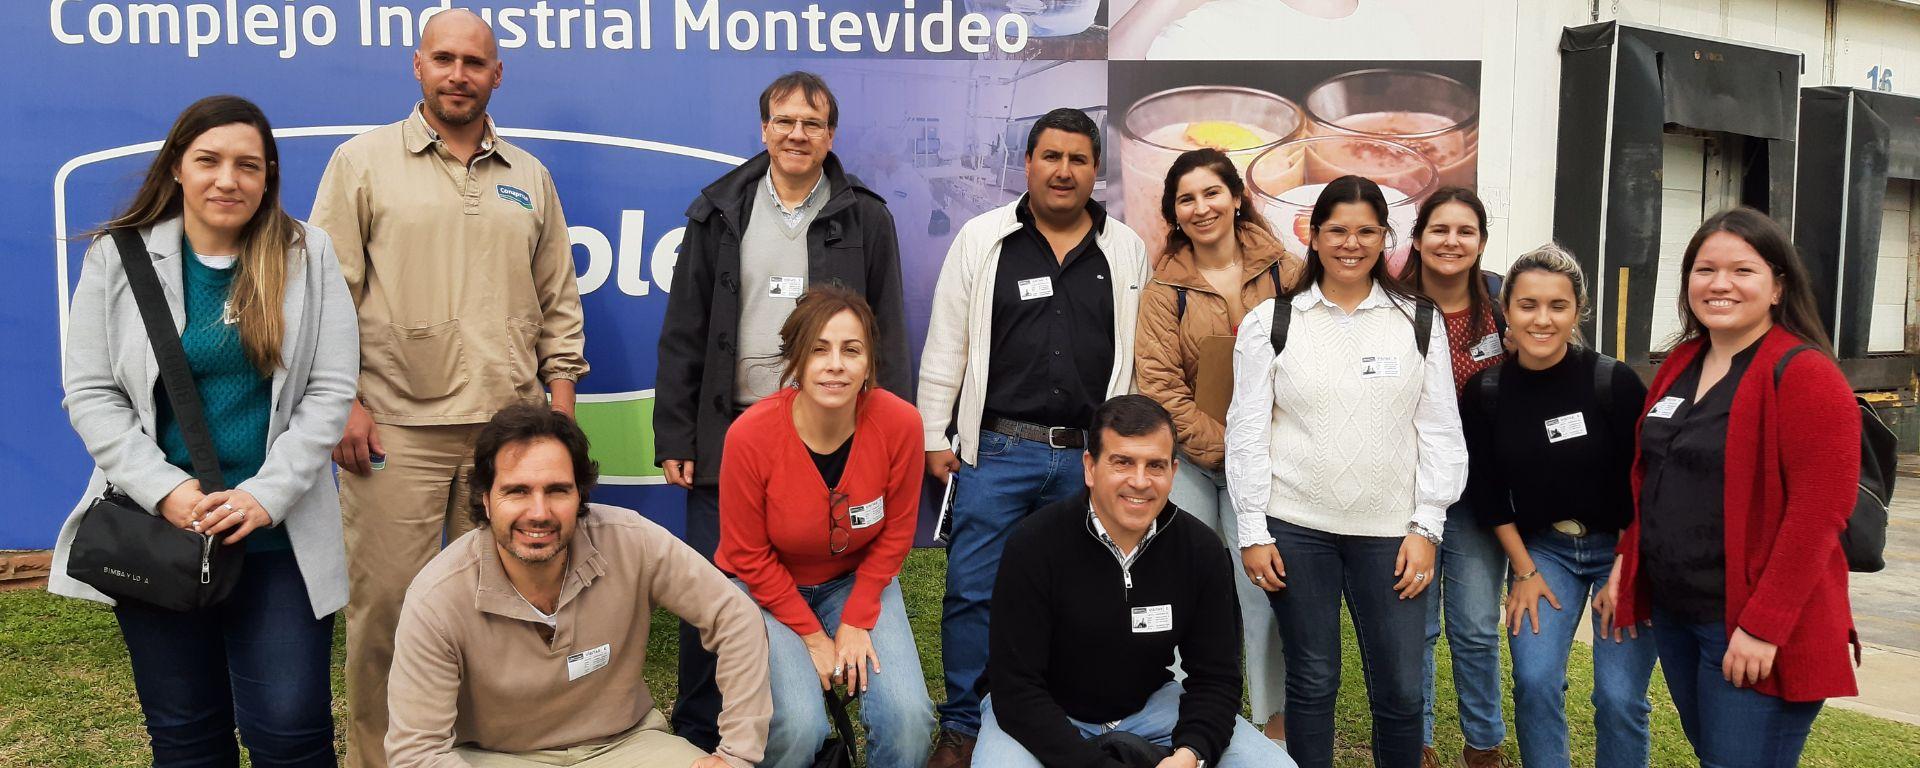 Estudiantes y docentes de la UM visitaron el Complejo Industrial Montevideo de Conaprole